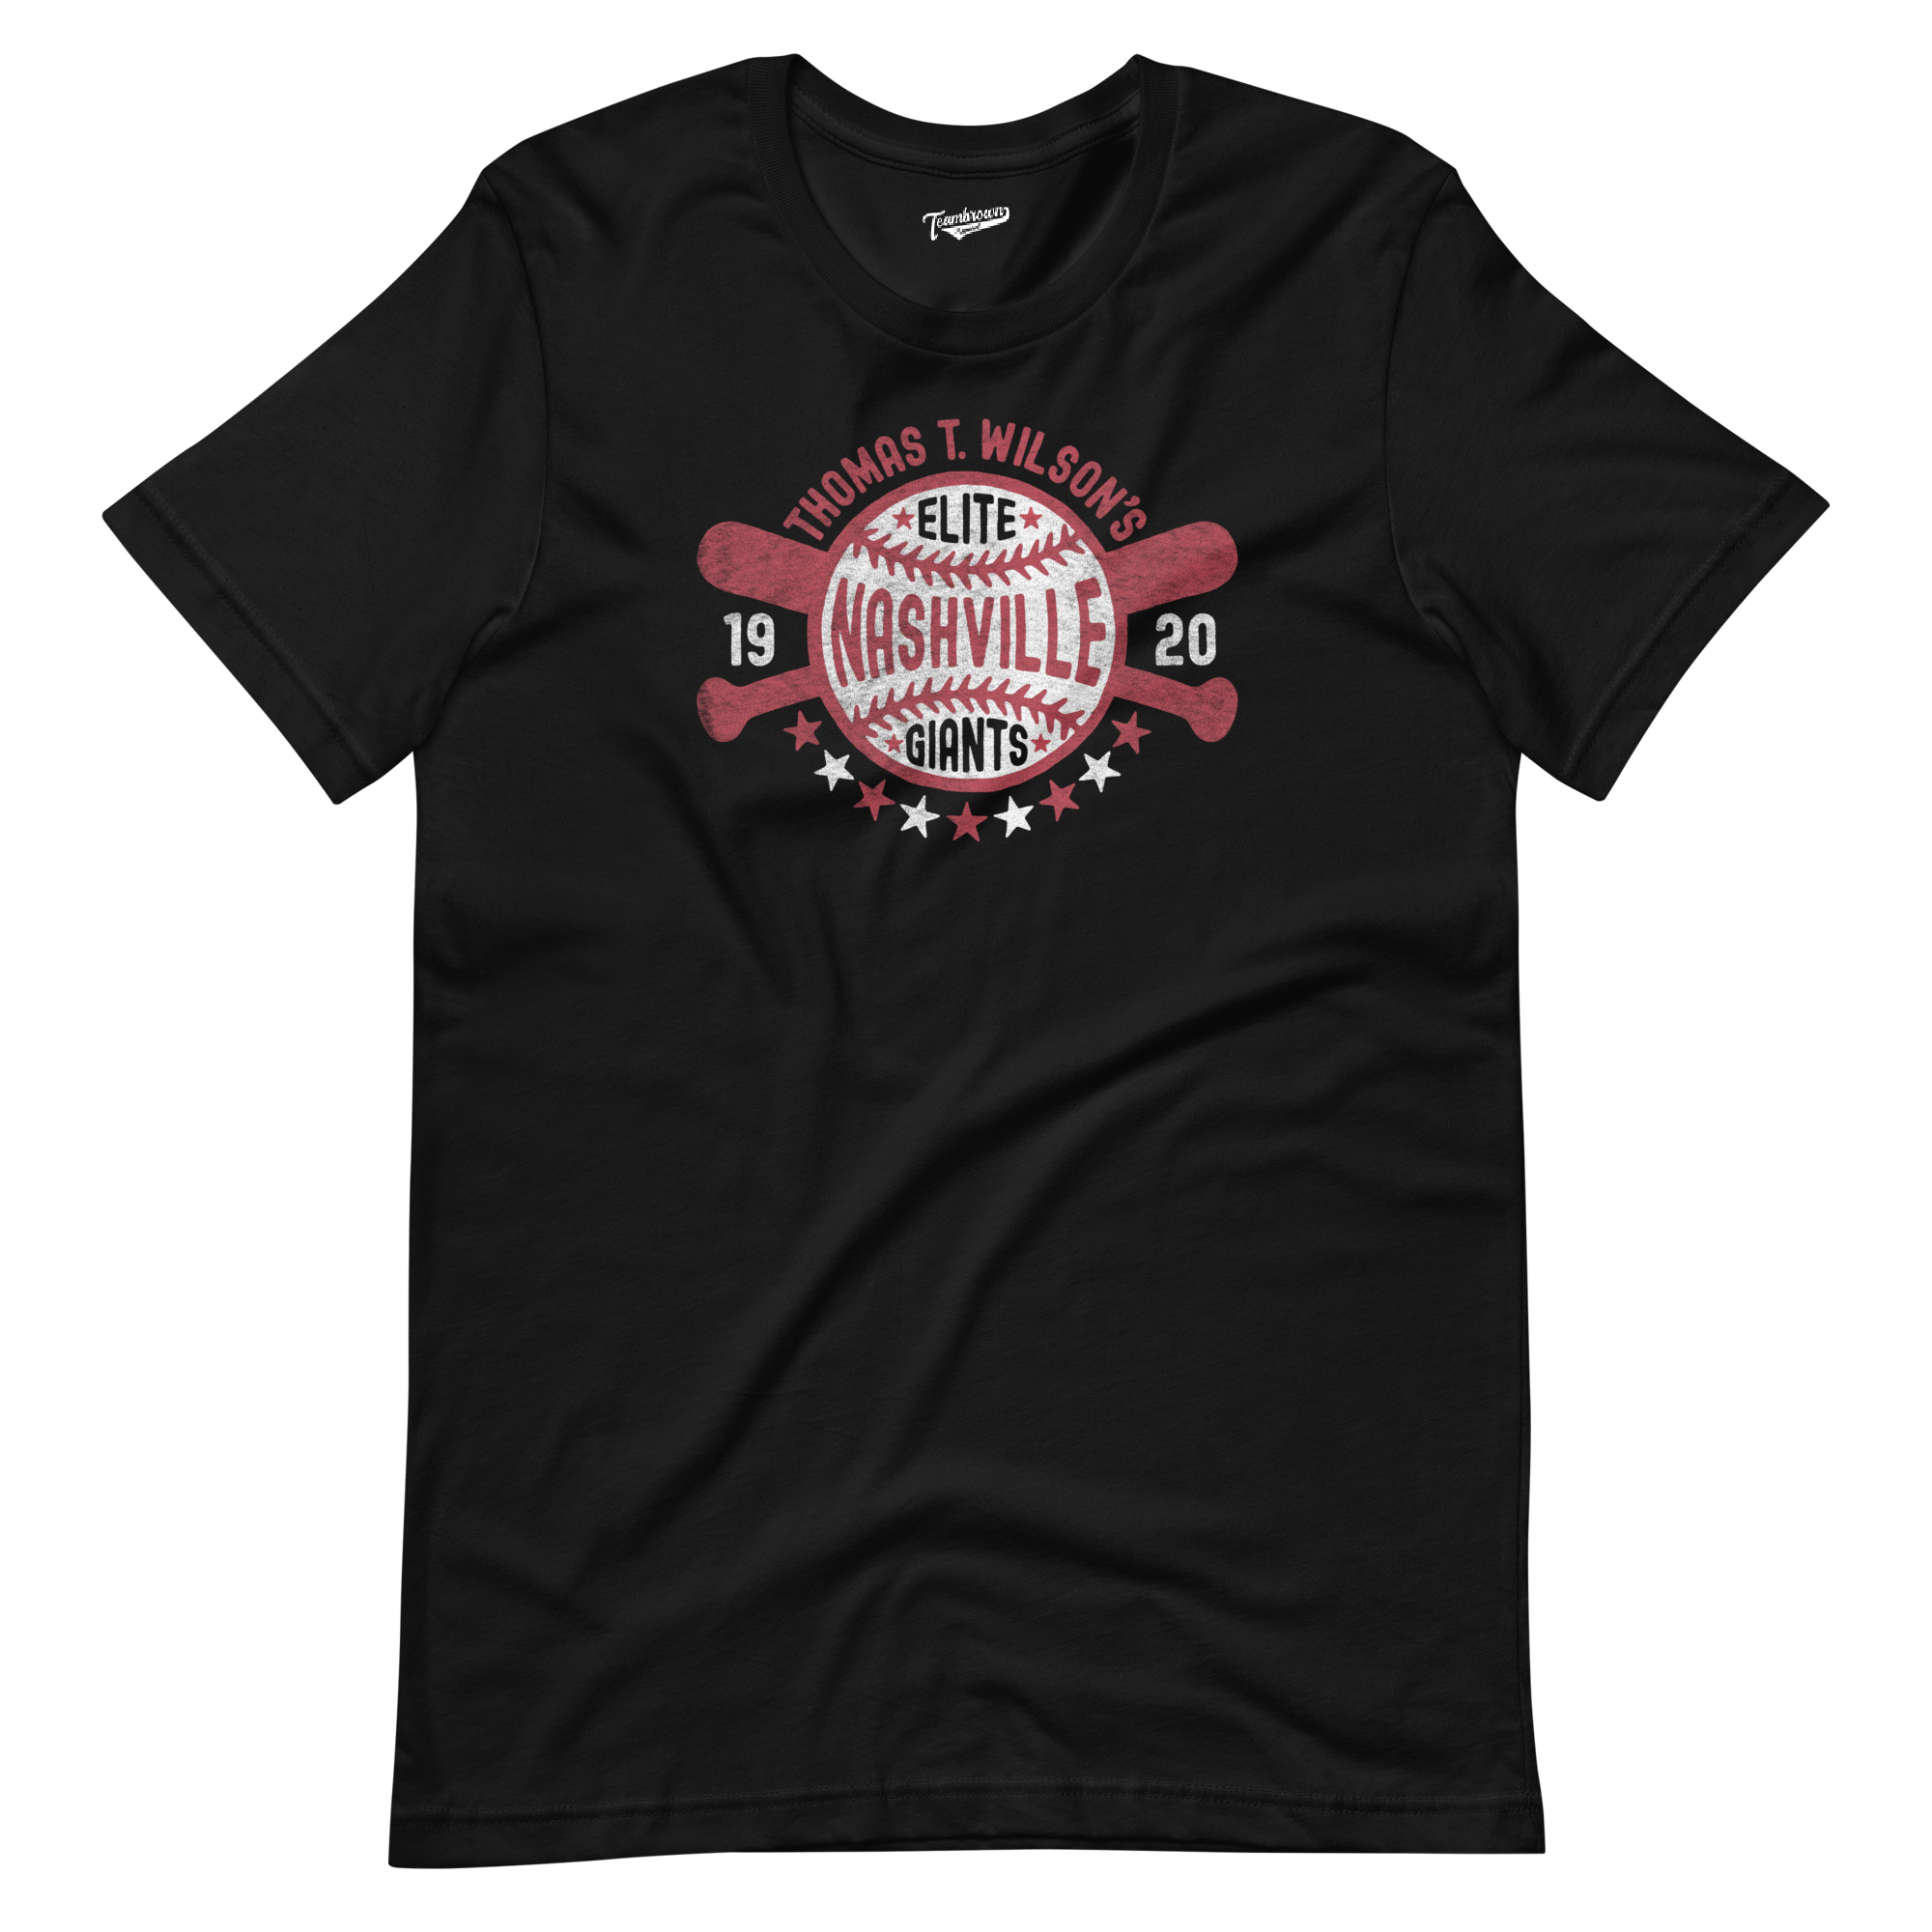 1920 Nashville Elite Giants - Unisex T-Shirt